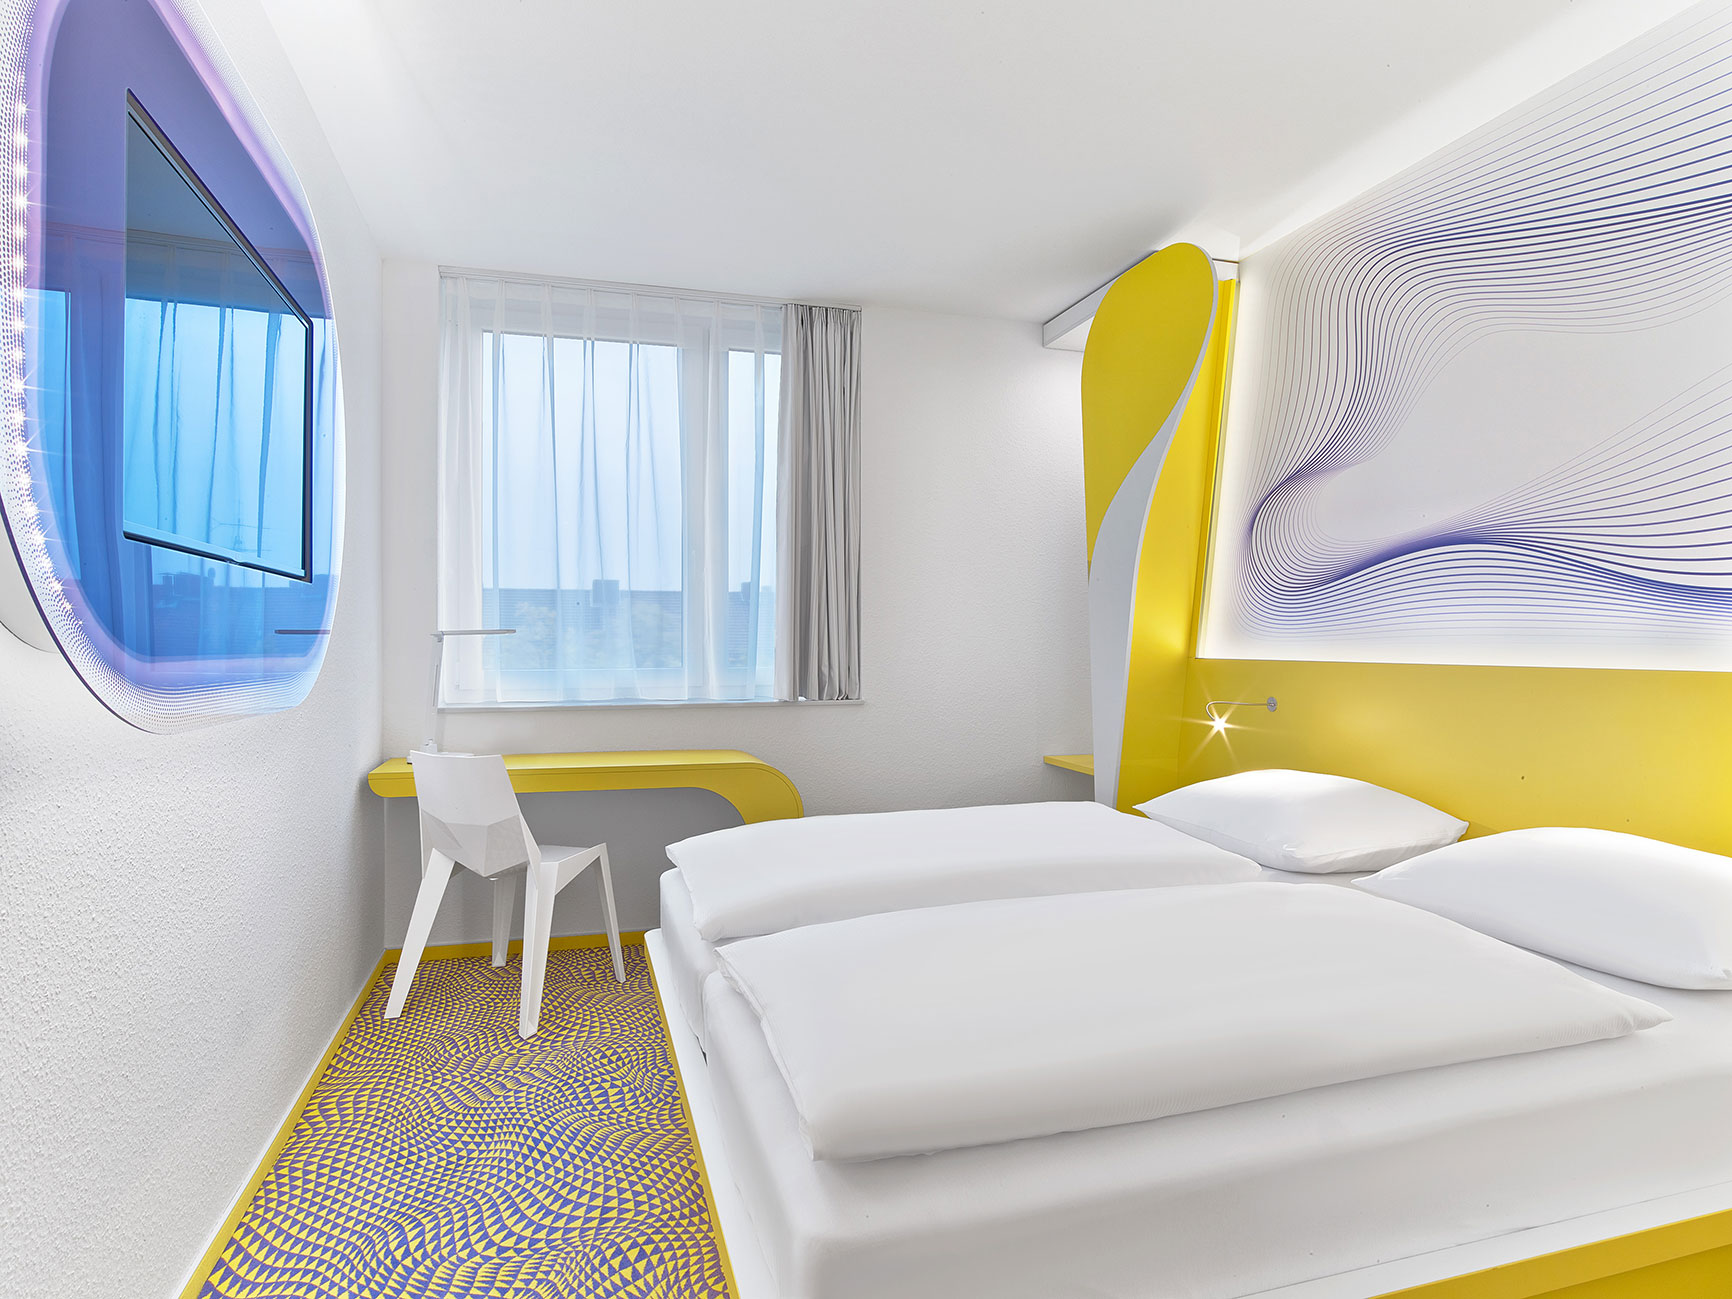 Doppelbett im Designzimmer des Hannover Hotels mit kleiner Schreibtischecke